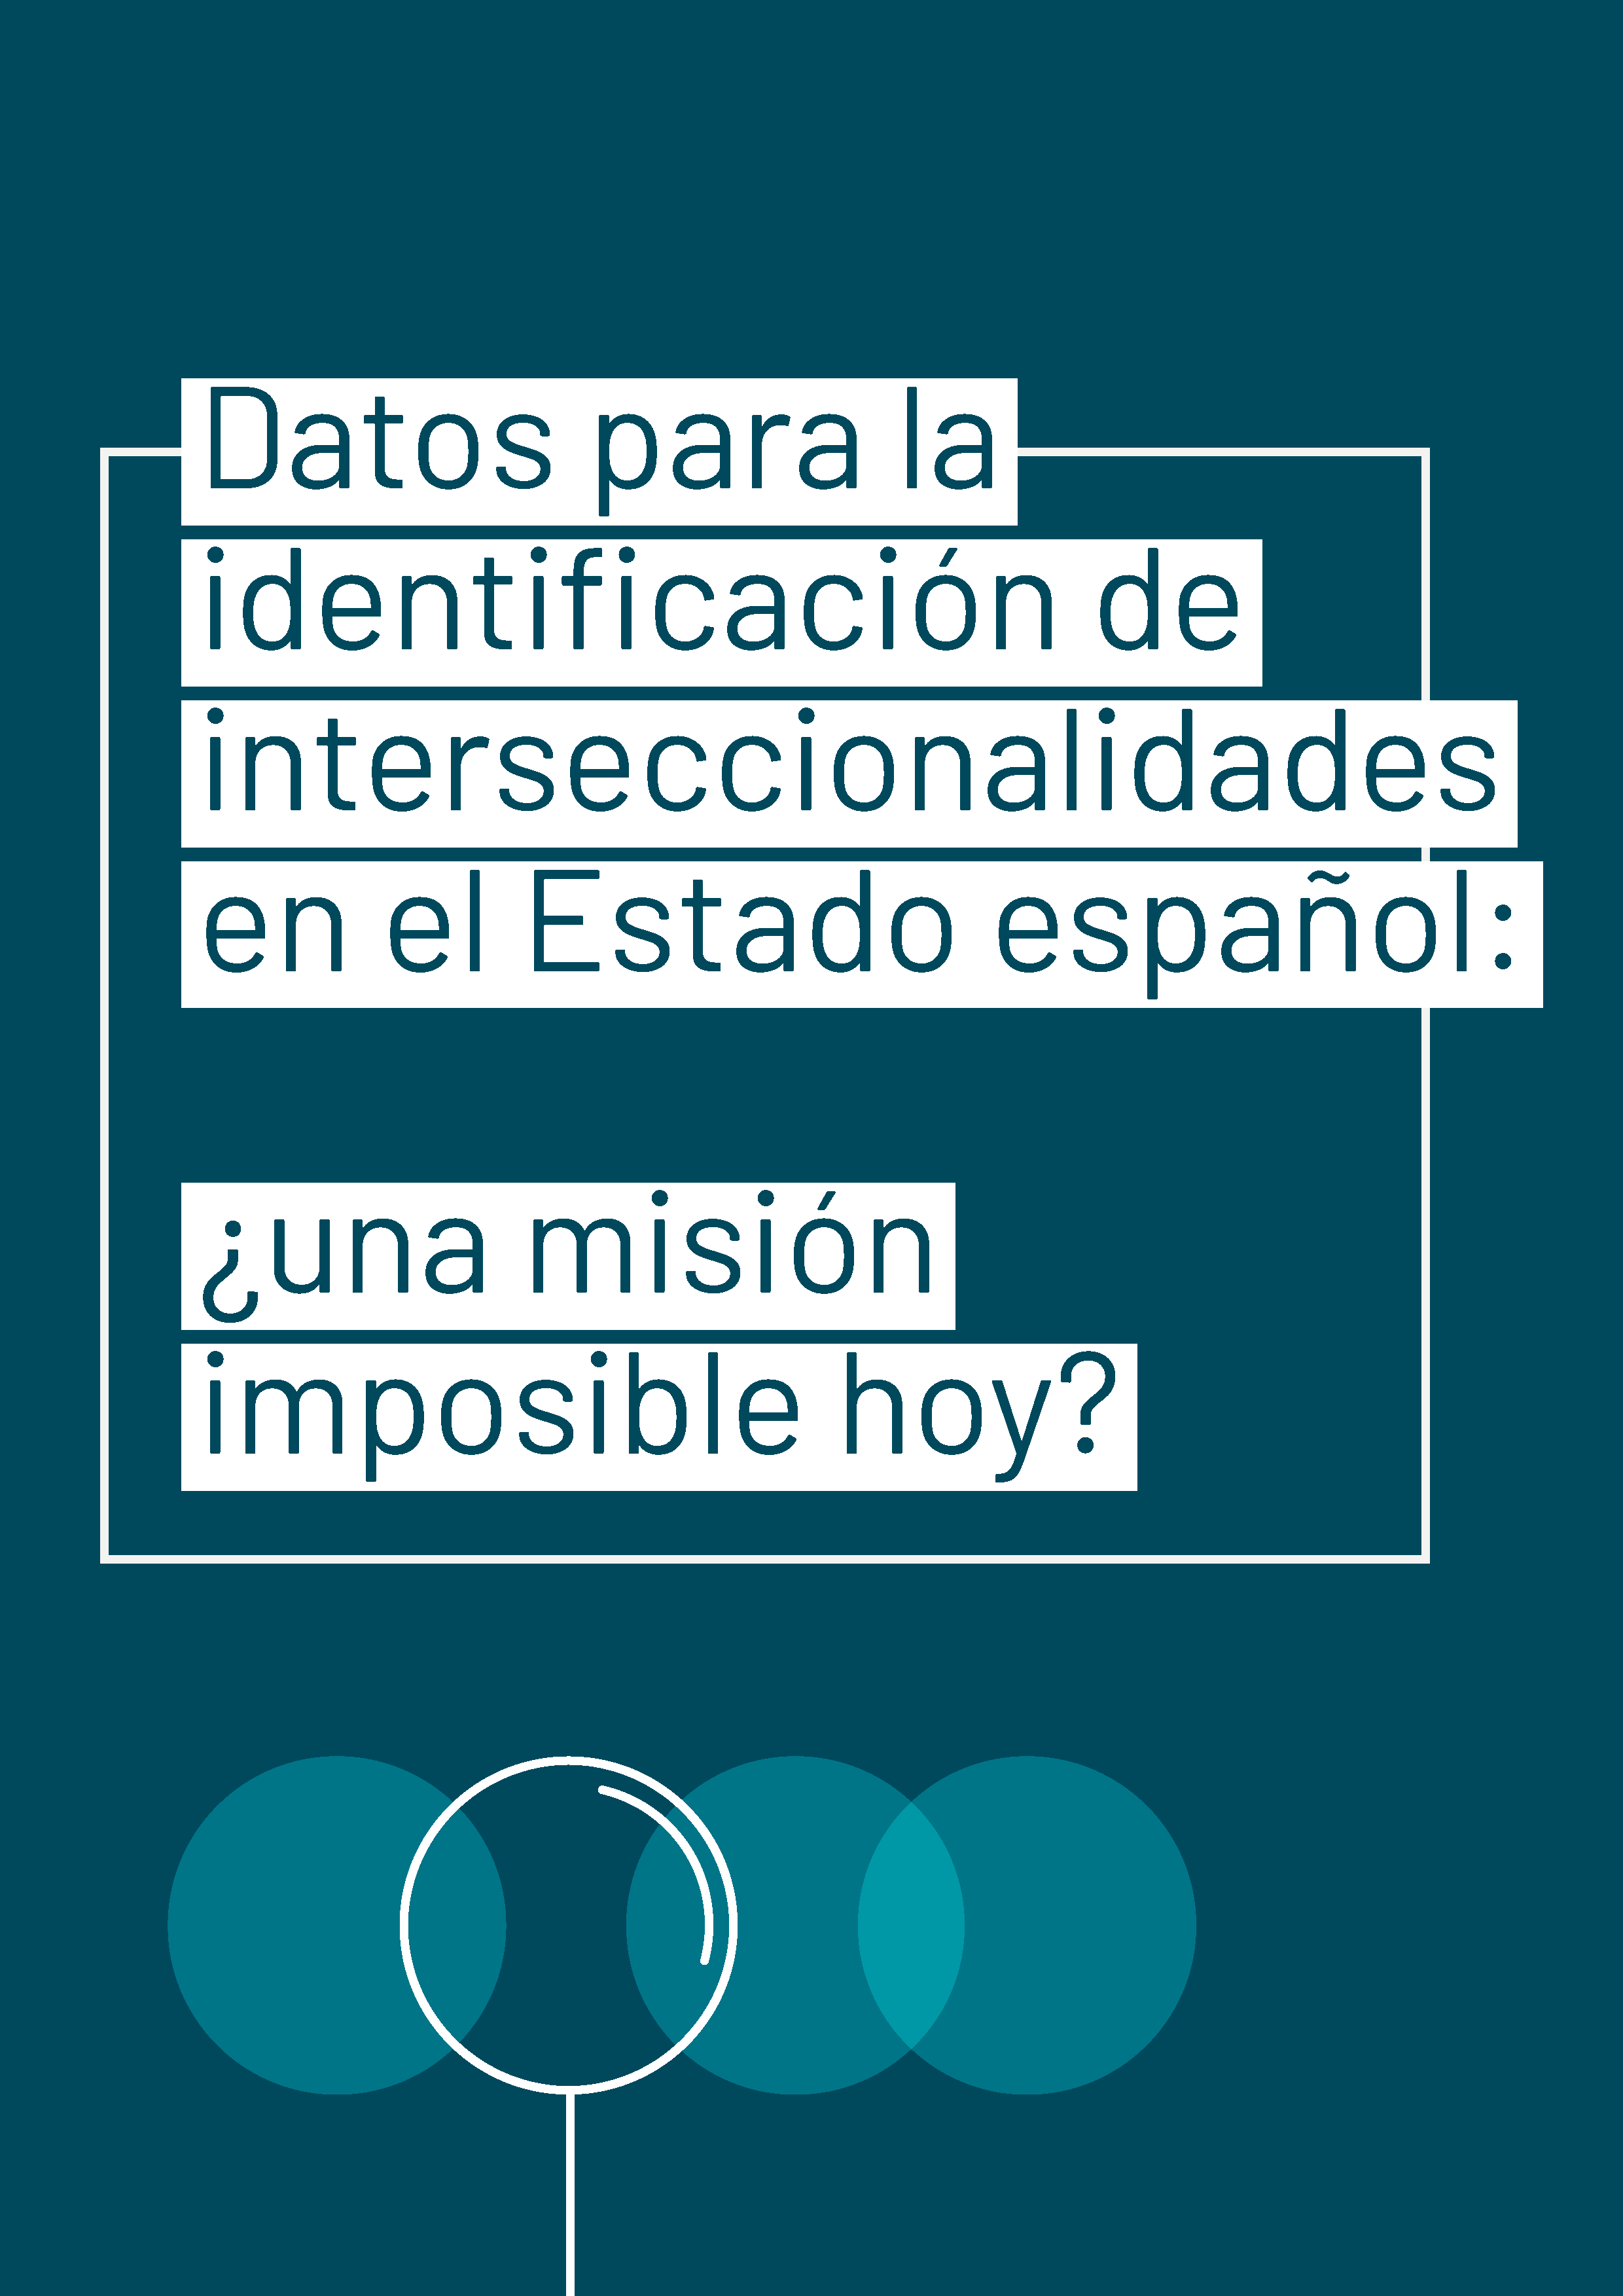 Dades per a la identificació d’interseccionalitats  a l’Estat espanyol: una missió impossible avui?